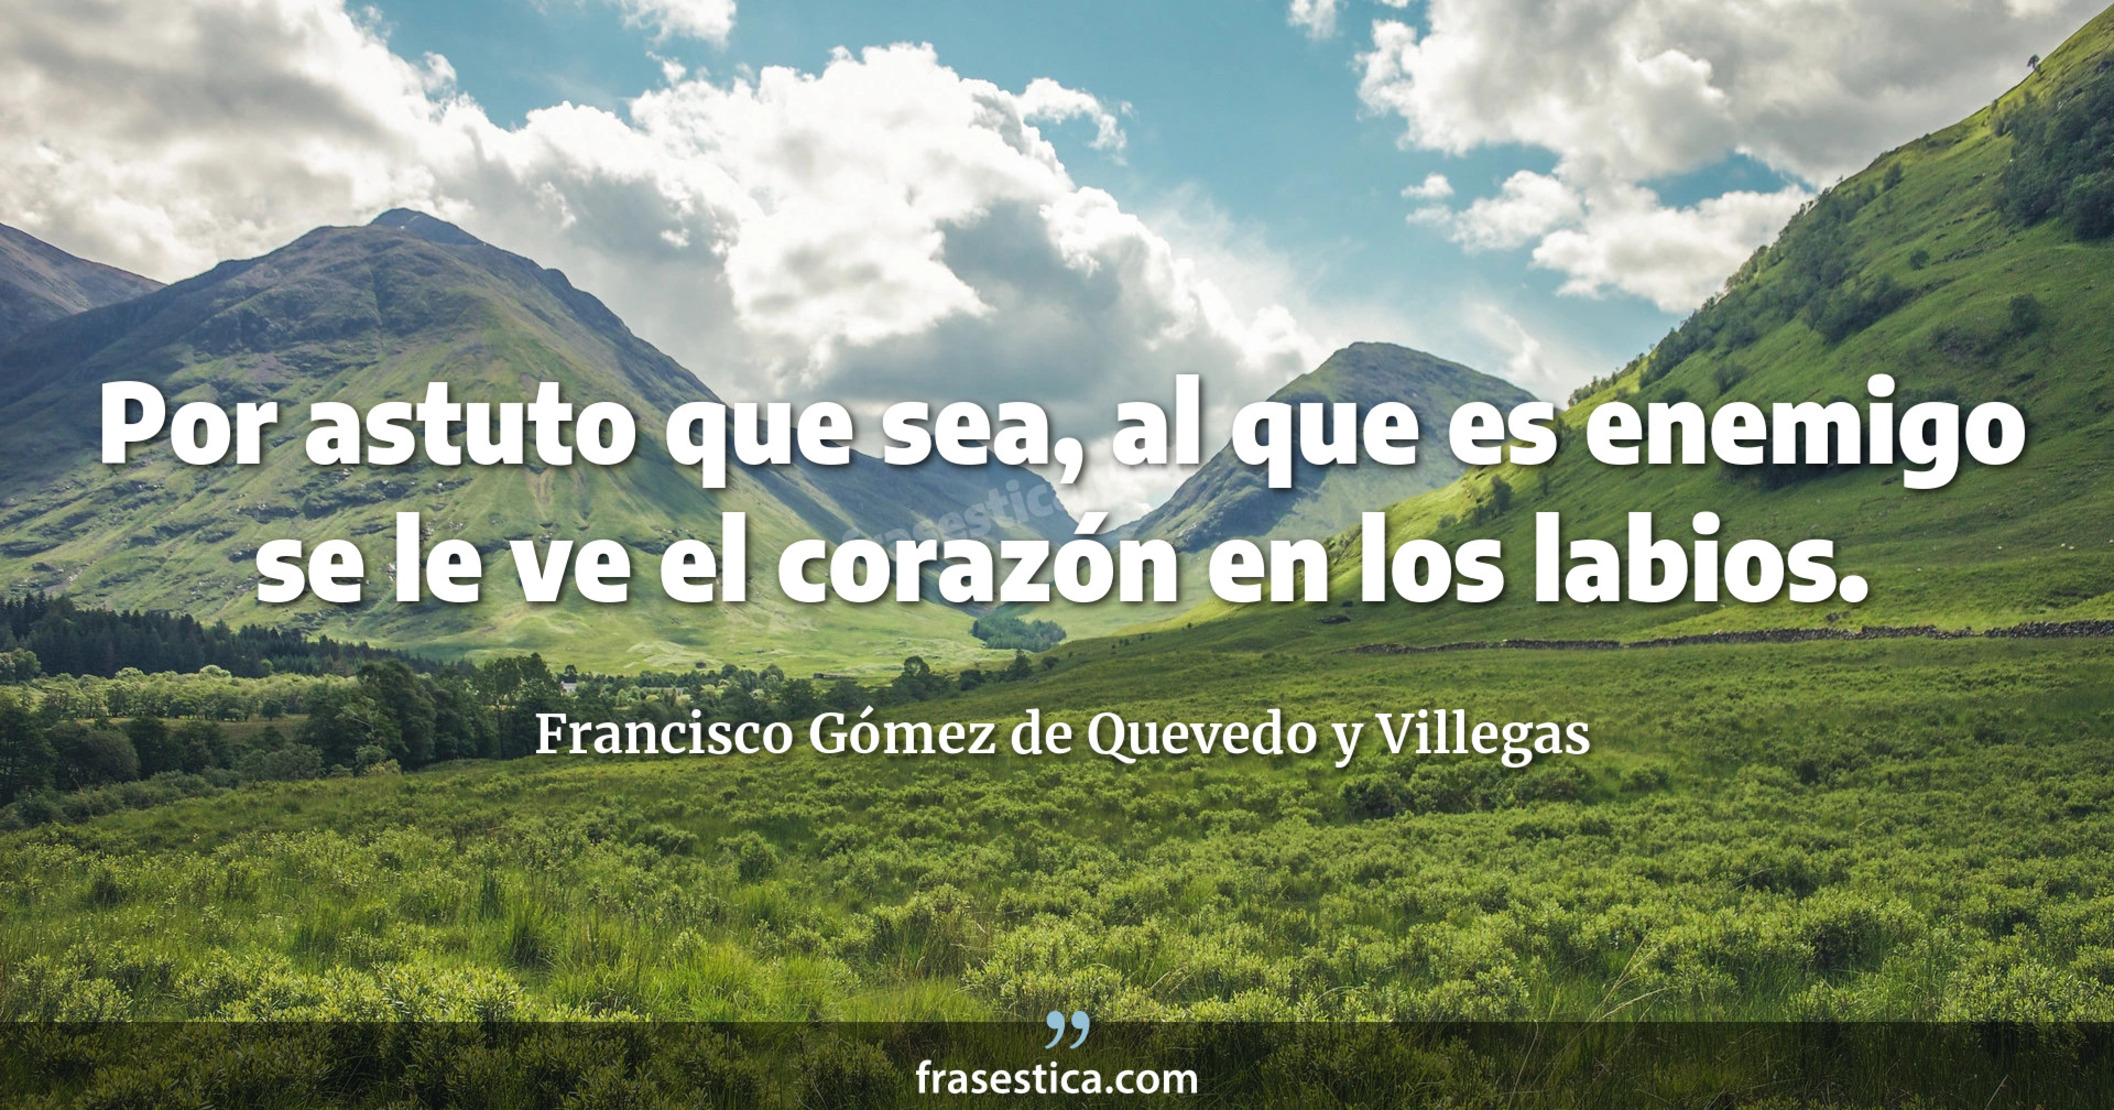 Por astuto que sea, al que es enemigo se le ve el corazón en los labios. - Francisco Gómez de Quevedo y Villegas